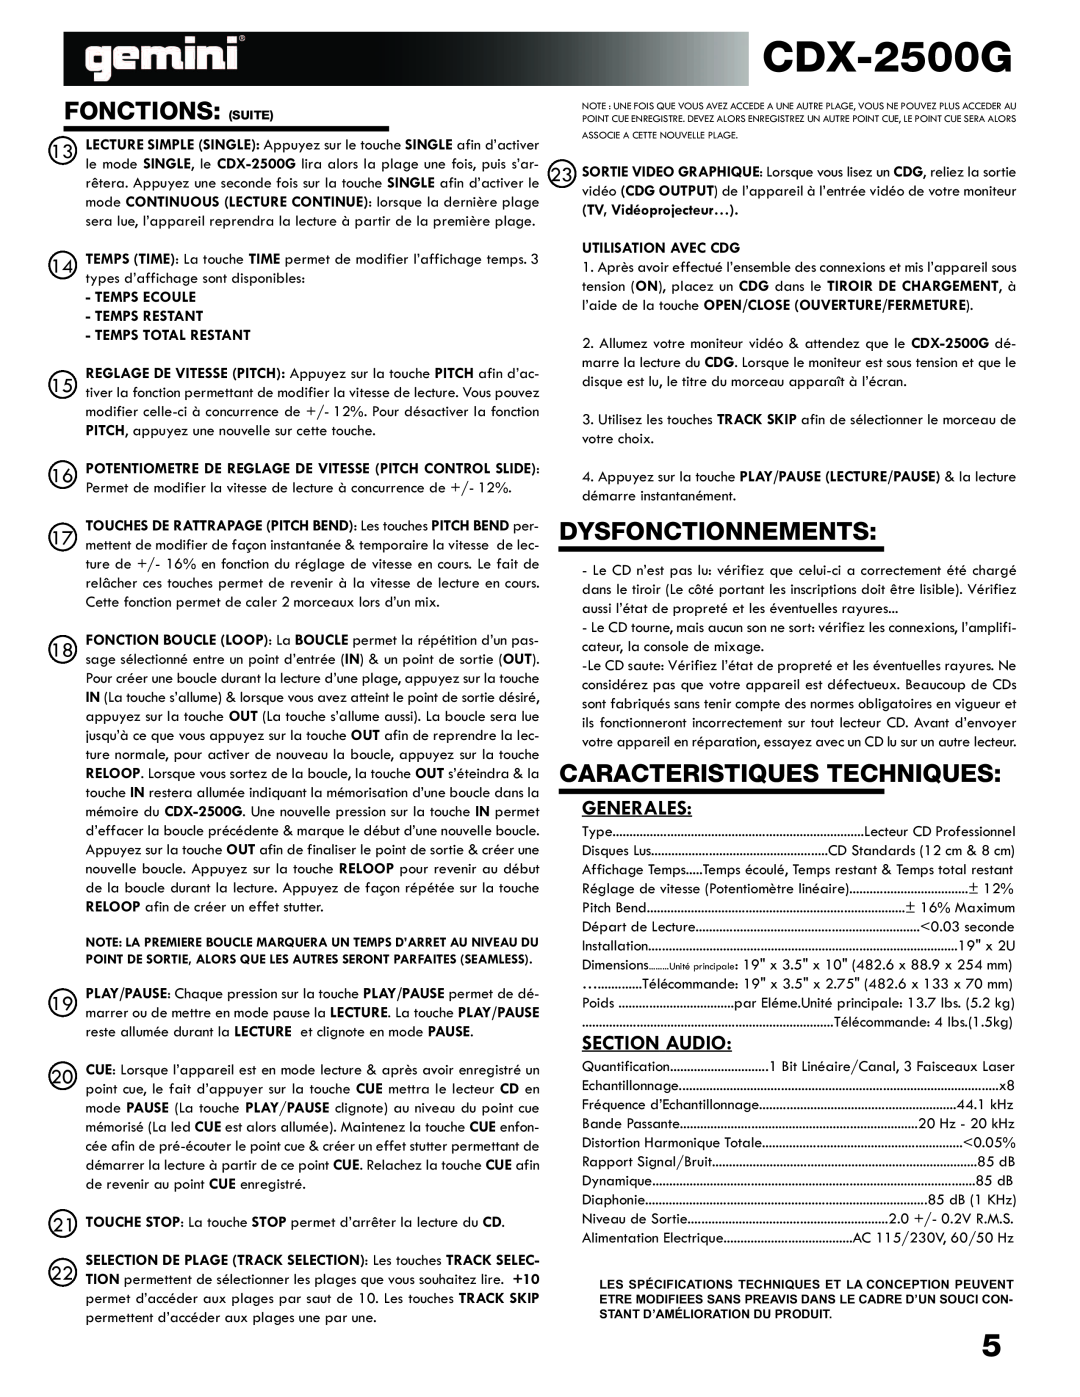 Gemini CDX-2500G manual Fonctions Suite, Caracteristiques Techniques, Dysfonctionnements 